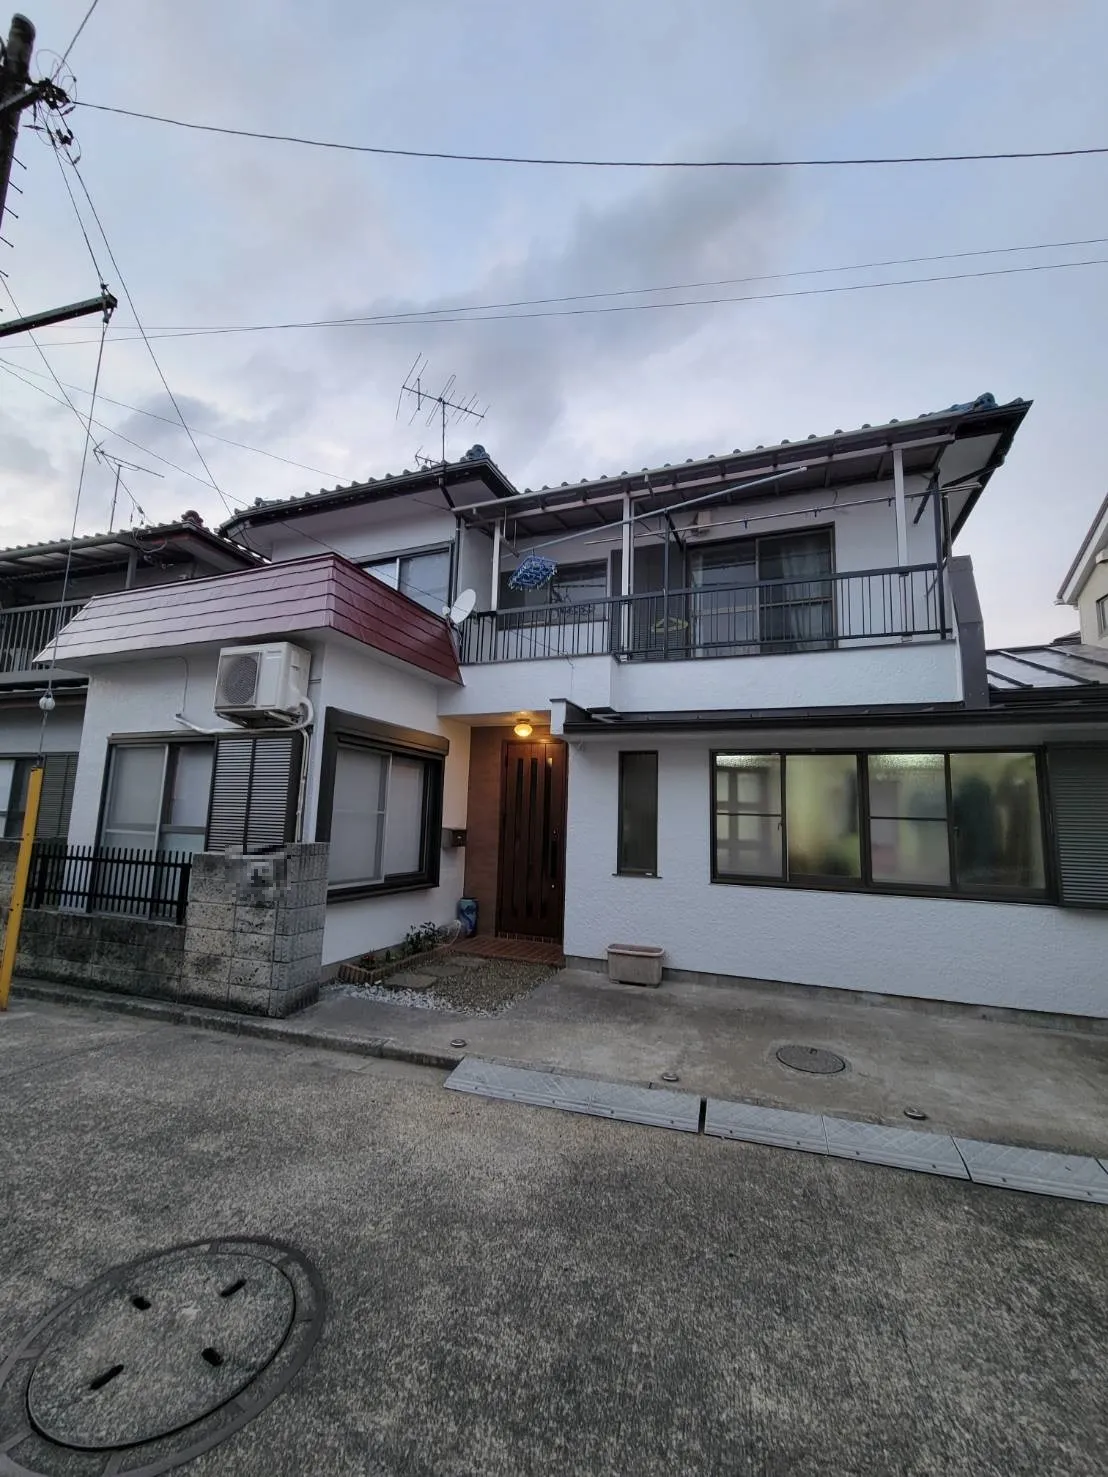 横浜市鶴見区で行っているK様邸の工事も残すは土間打ち工事のみとなりました